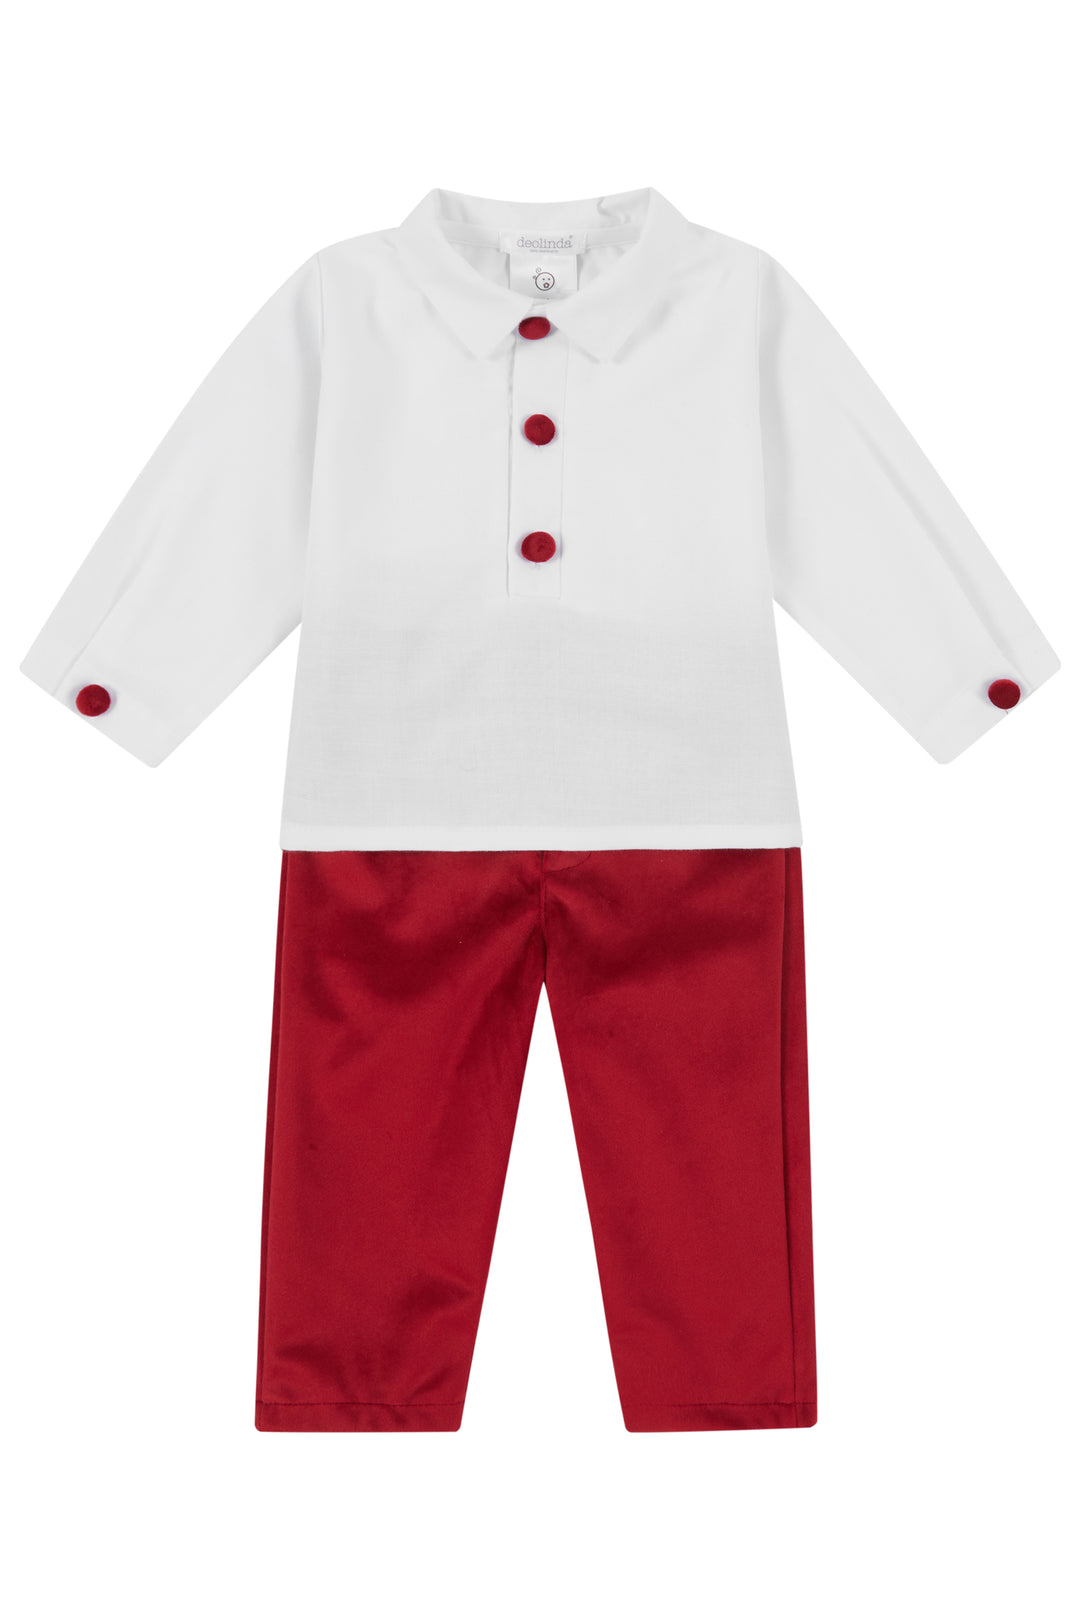 Deolinda "Digby" White Shirt & Red Velvet Trousers | Millie and John